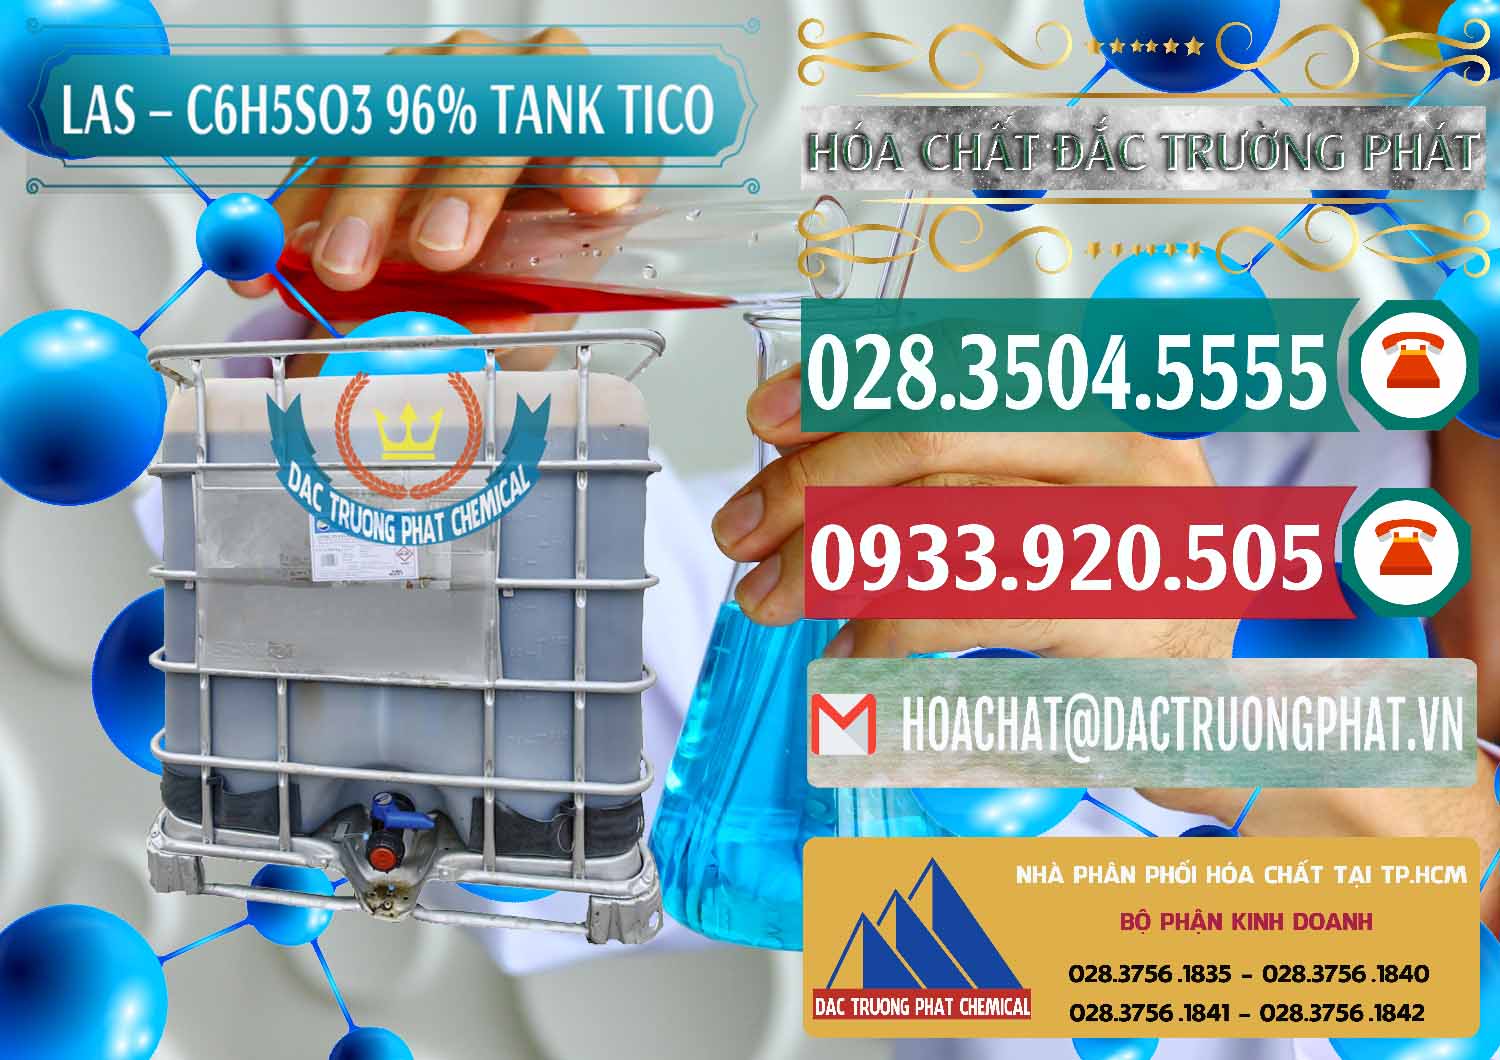 Cty chuyên nhập khẩu & bán Chất tạo bọt Las P Tico Tank IBC Bồn Việt Nam - 0488 - Chuyên cung cấp & phân phối hóa chất tại TP.HCM - muabanhoachat.vn